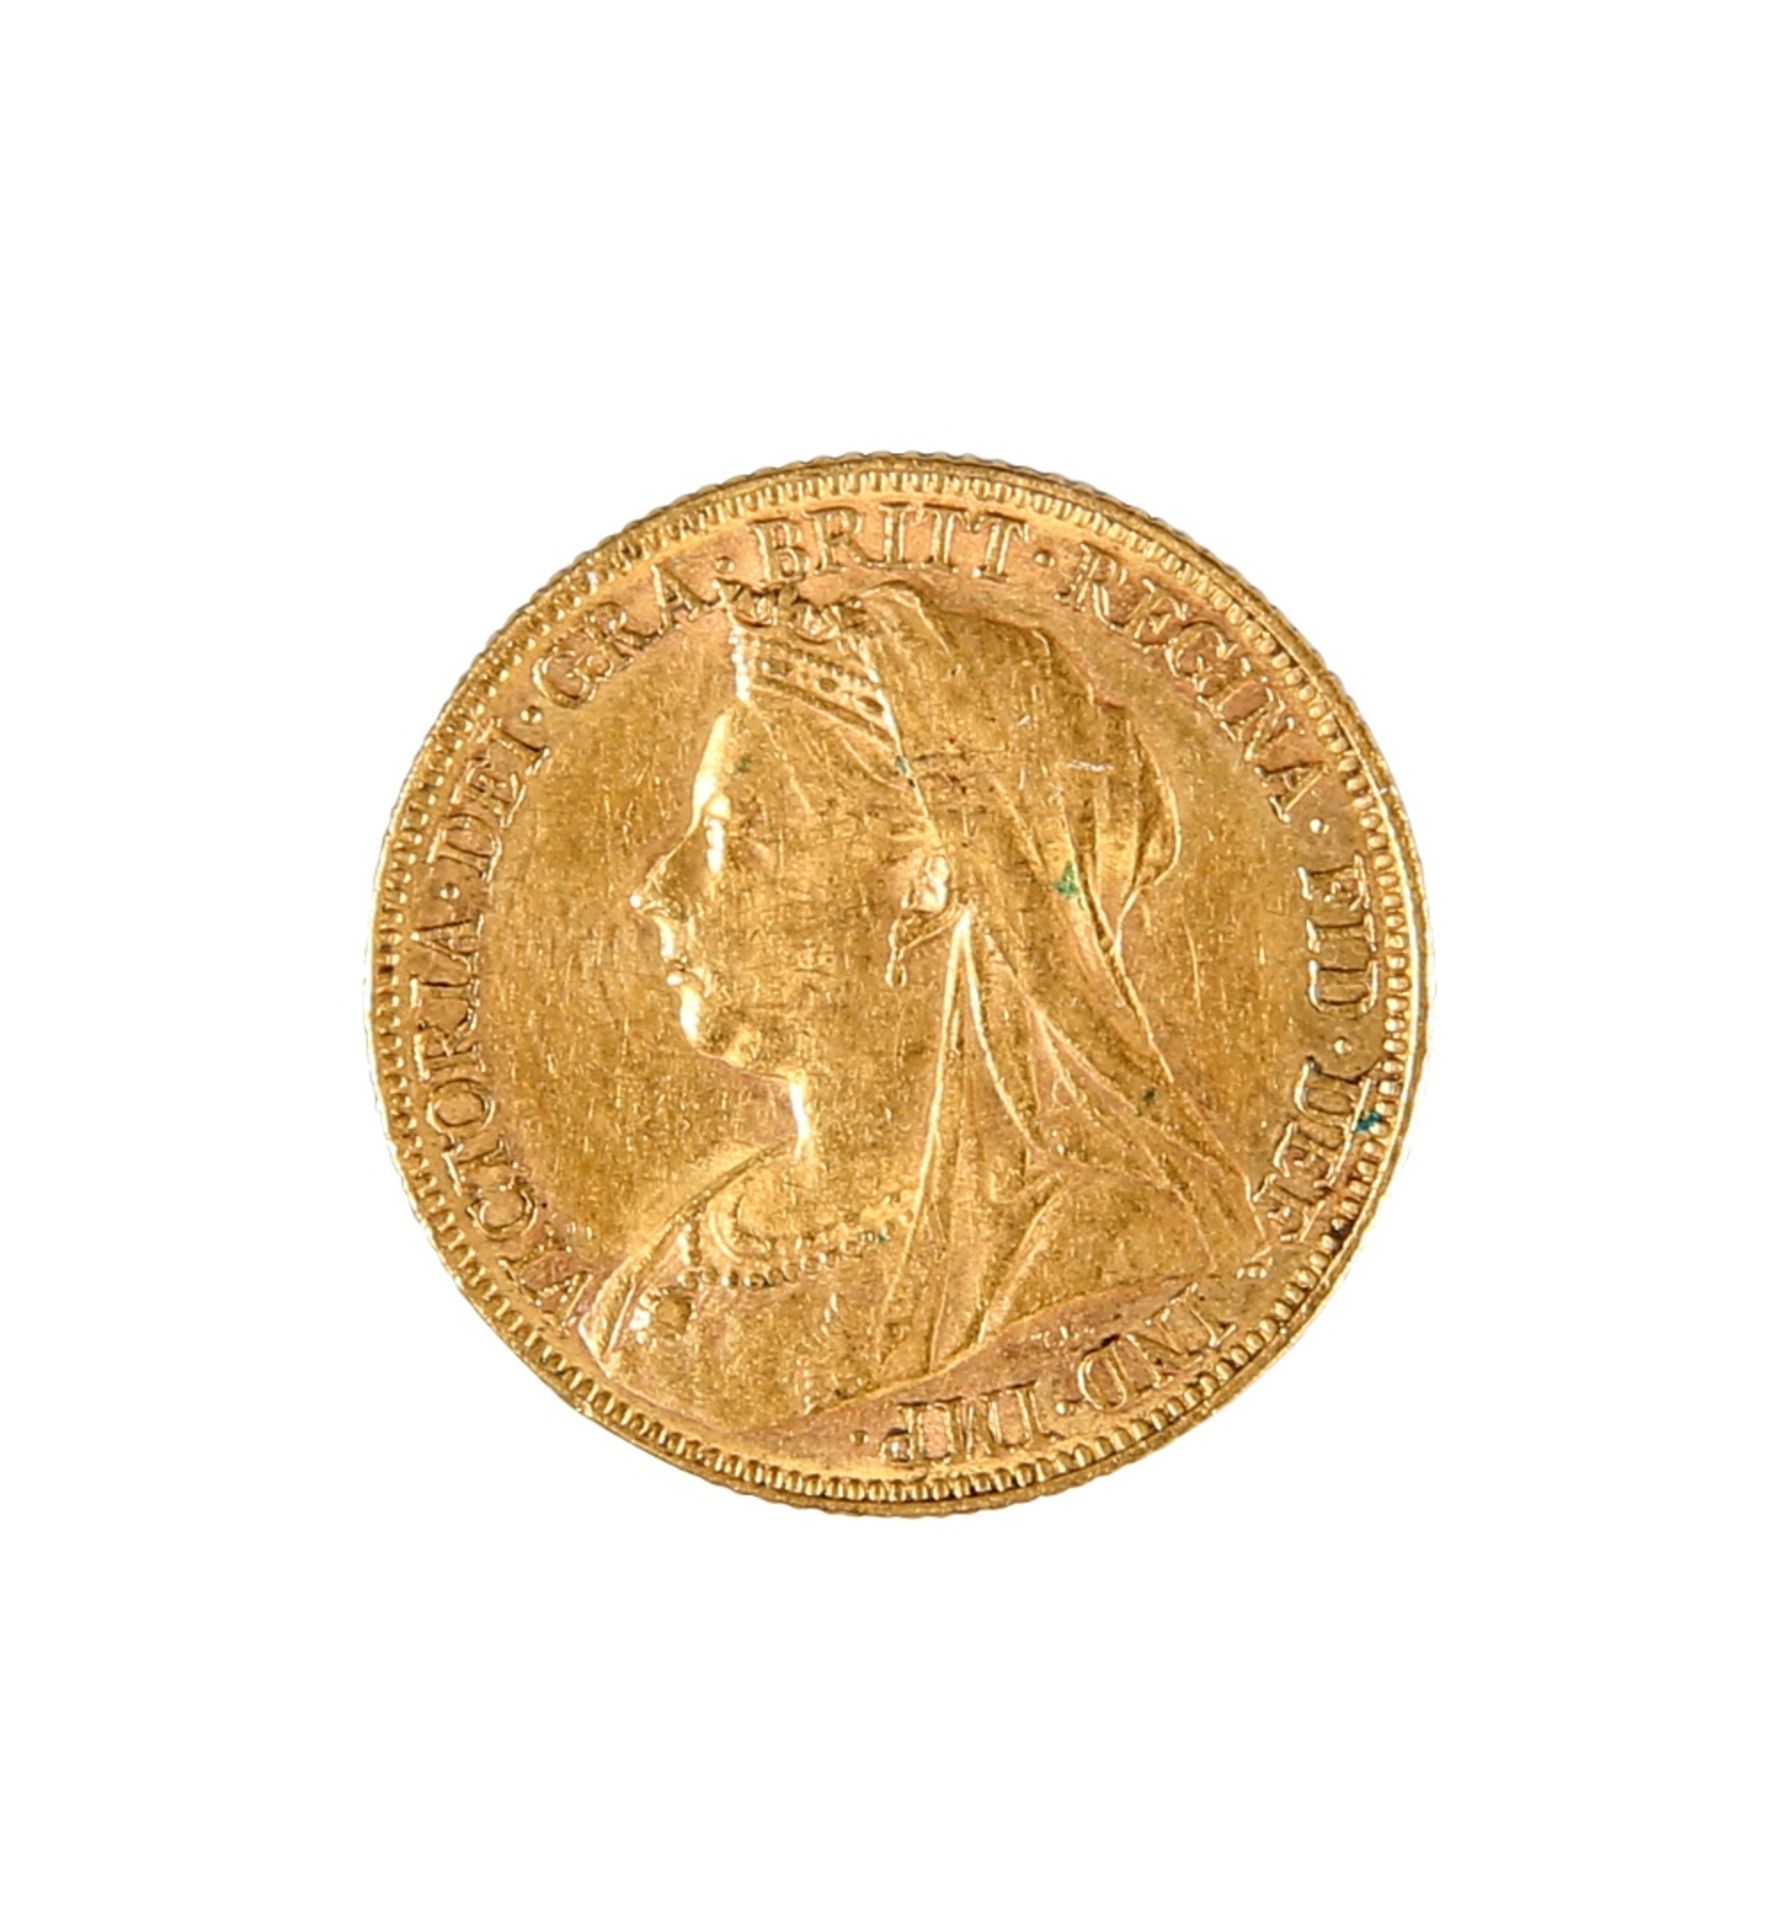 A VICTORIA GOLD SOVEREIGN, 1899.